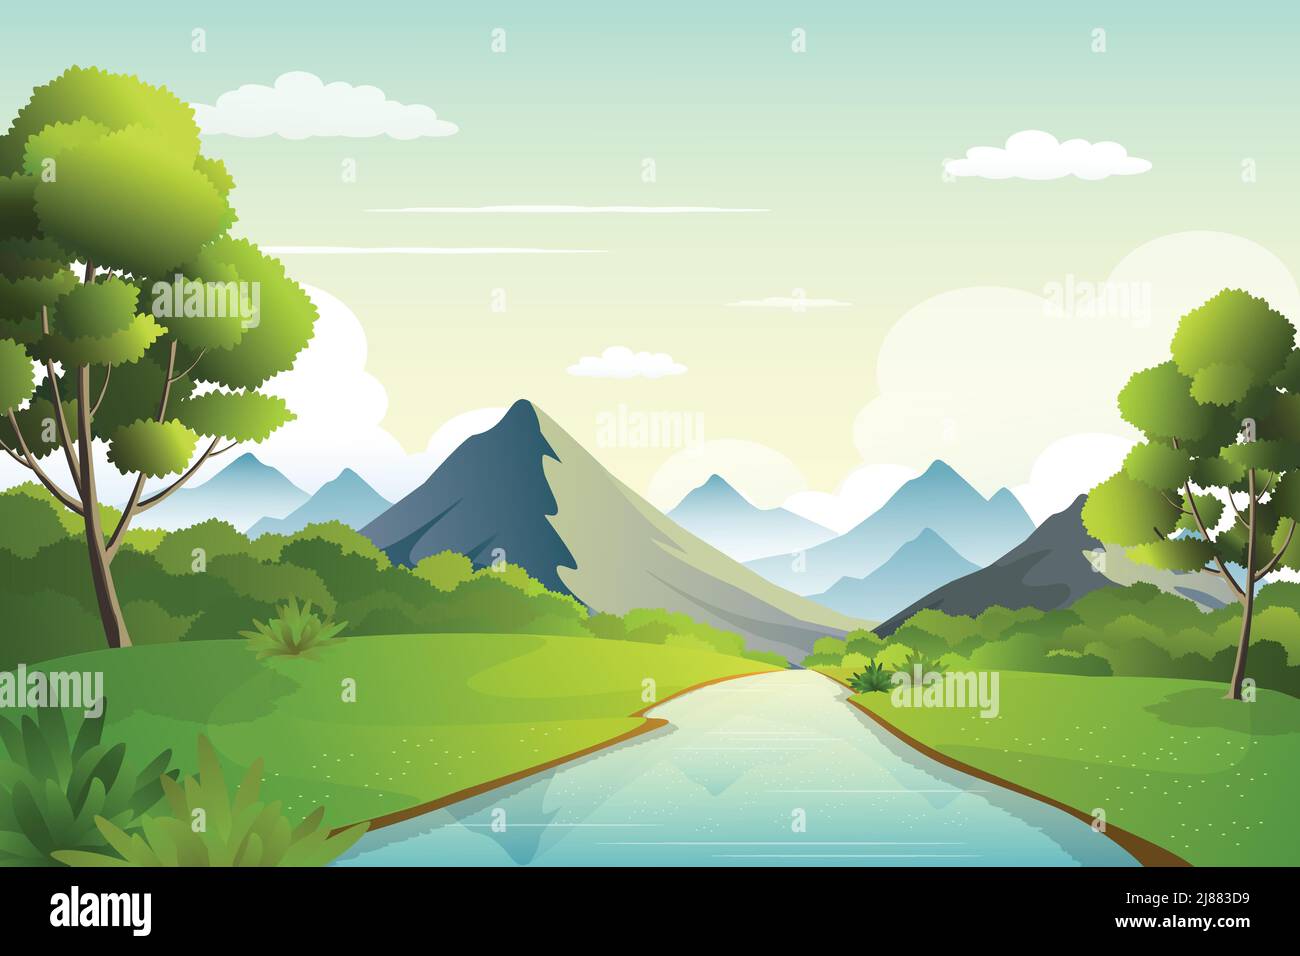 Paysage de nature au bord de la rivière avec chaîne de montagnes à l'horizon, buissons verts et illustration vectorielle de paysage de rivière. Illustration de Vecteur